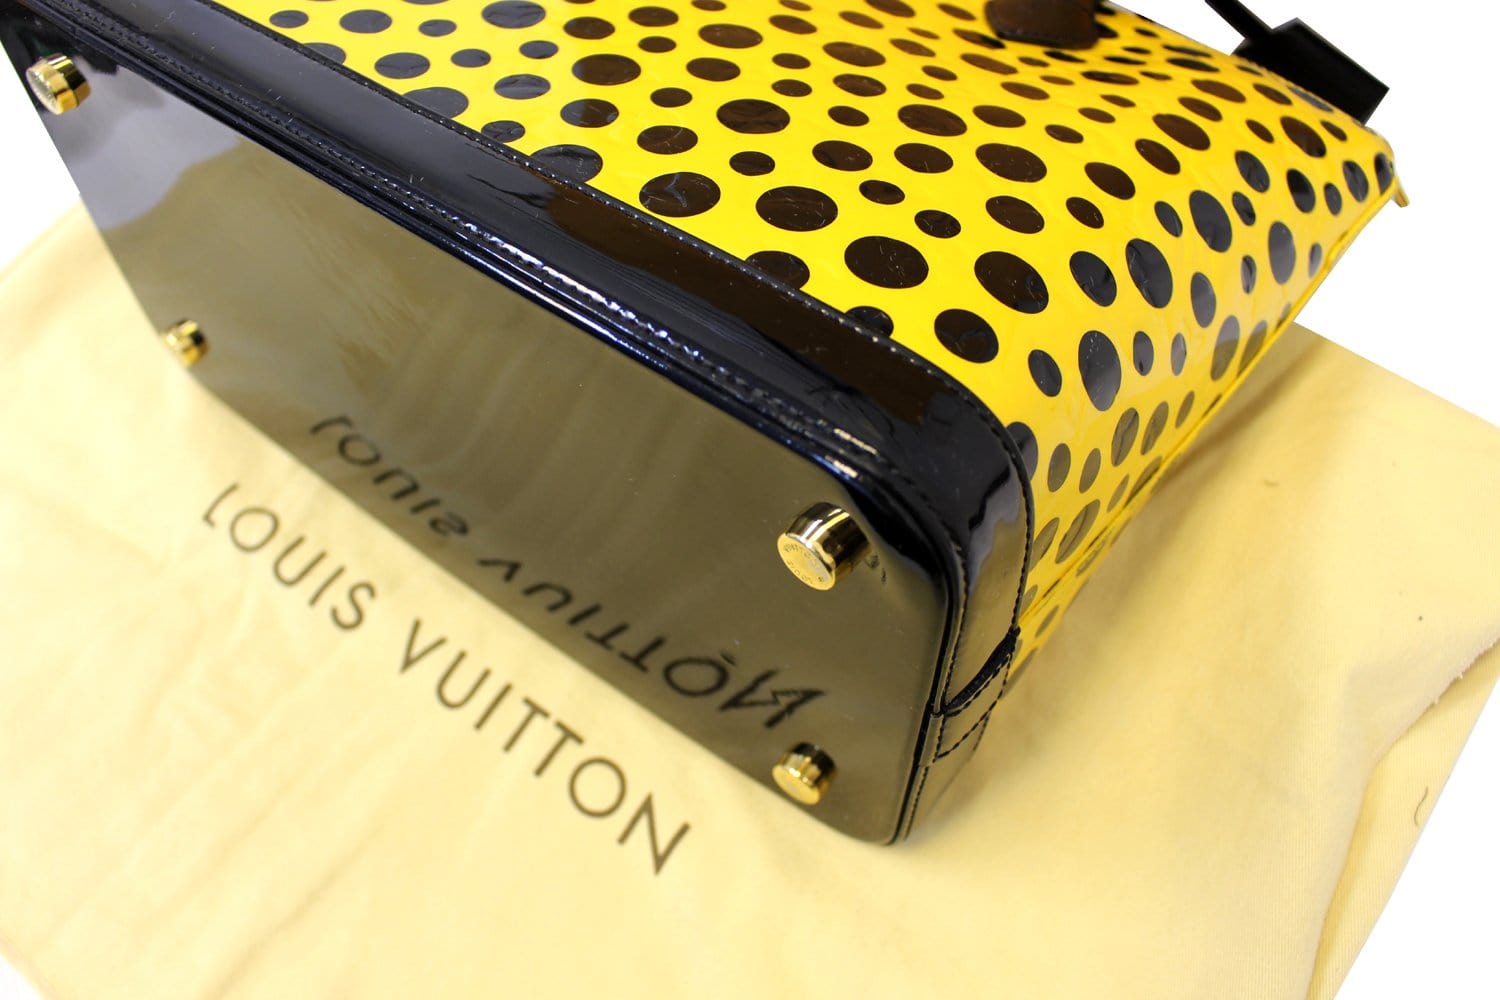 Louis Vuitton Yayoi Kusama Dots Infinity Zippy Wallet